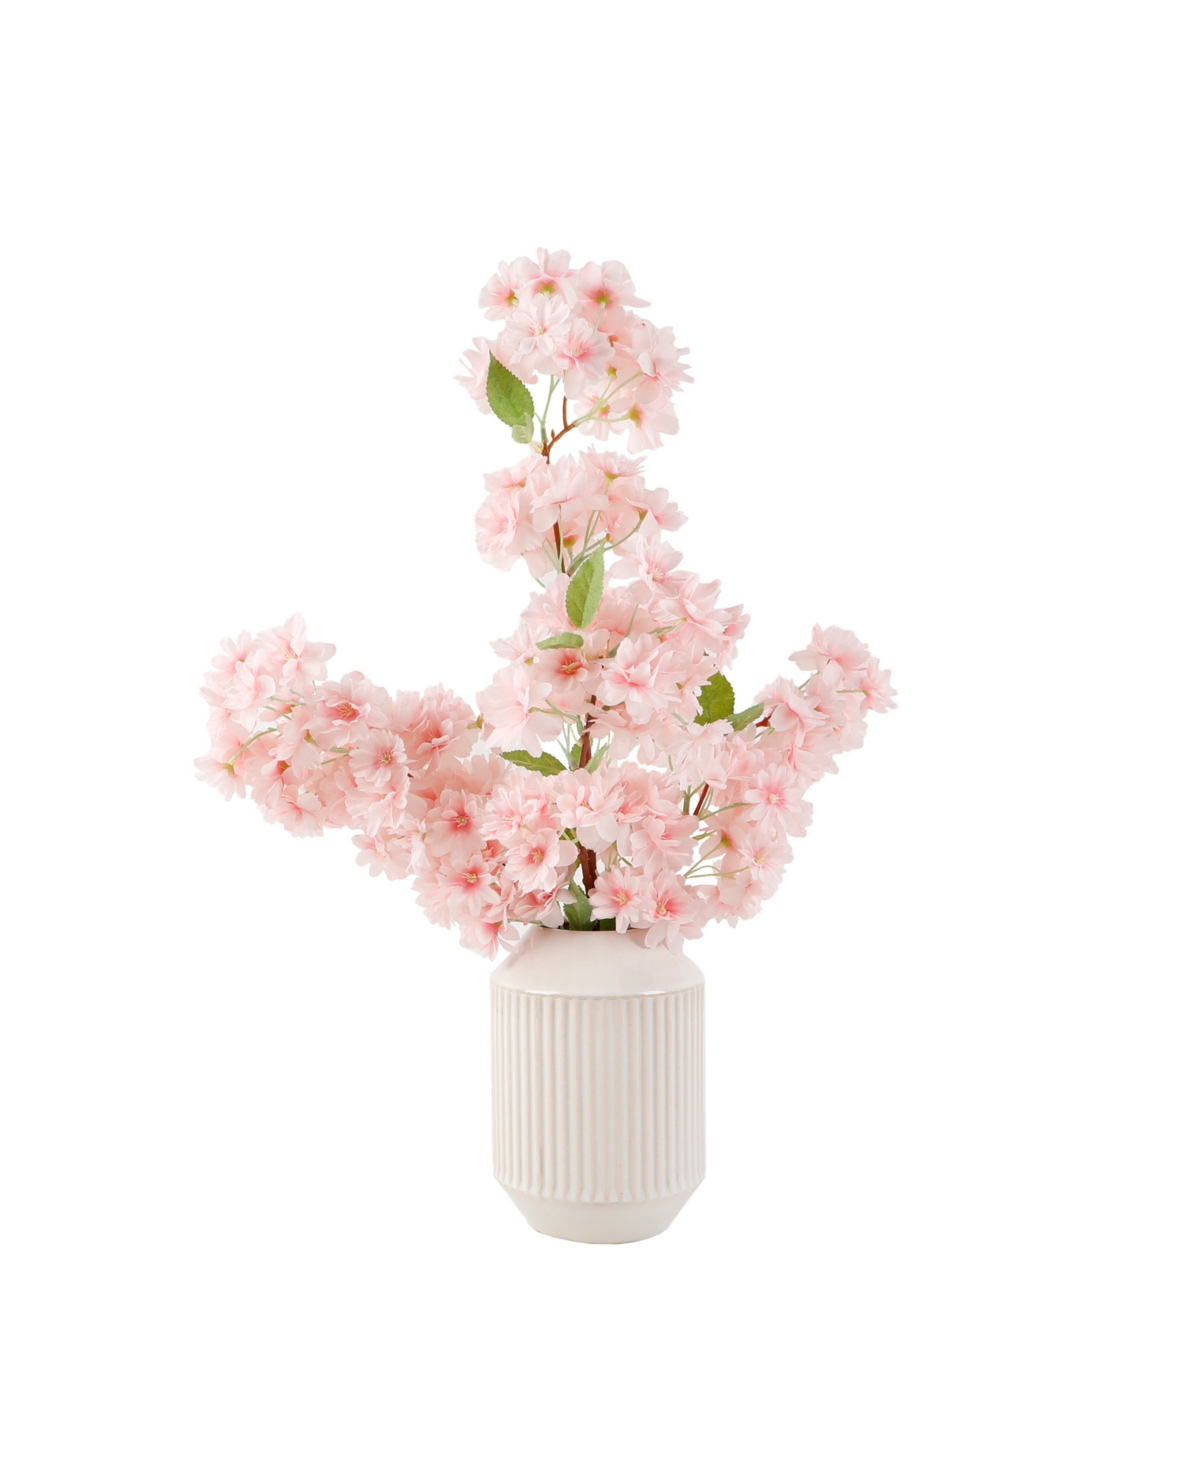 19.5" H Cherry Blossom in 6.65" H Ceramic Vase - White